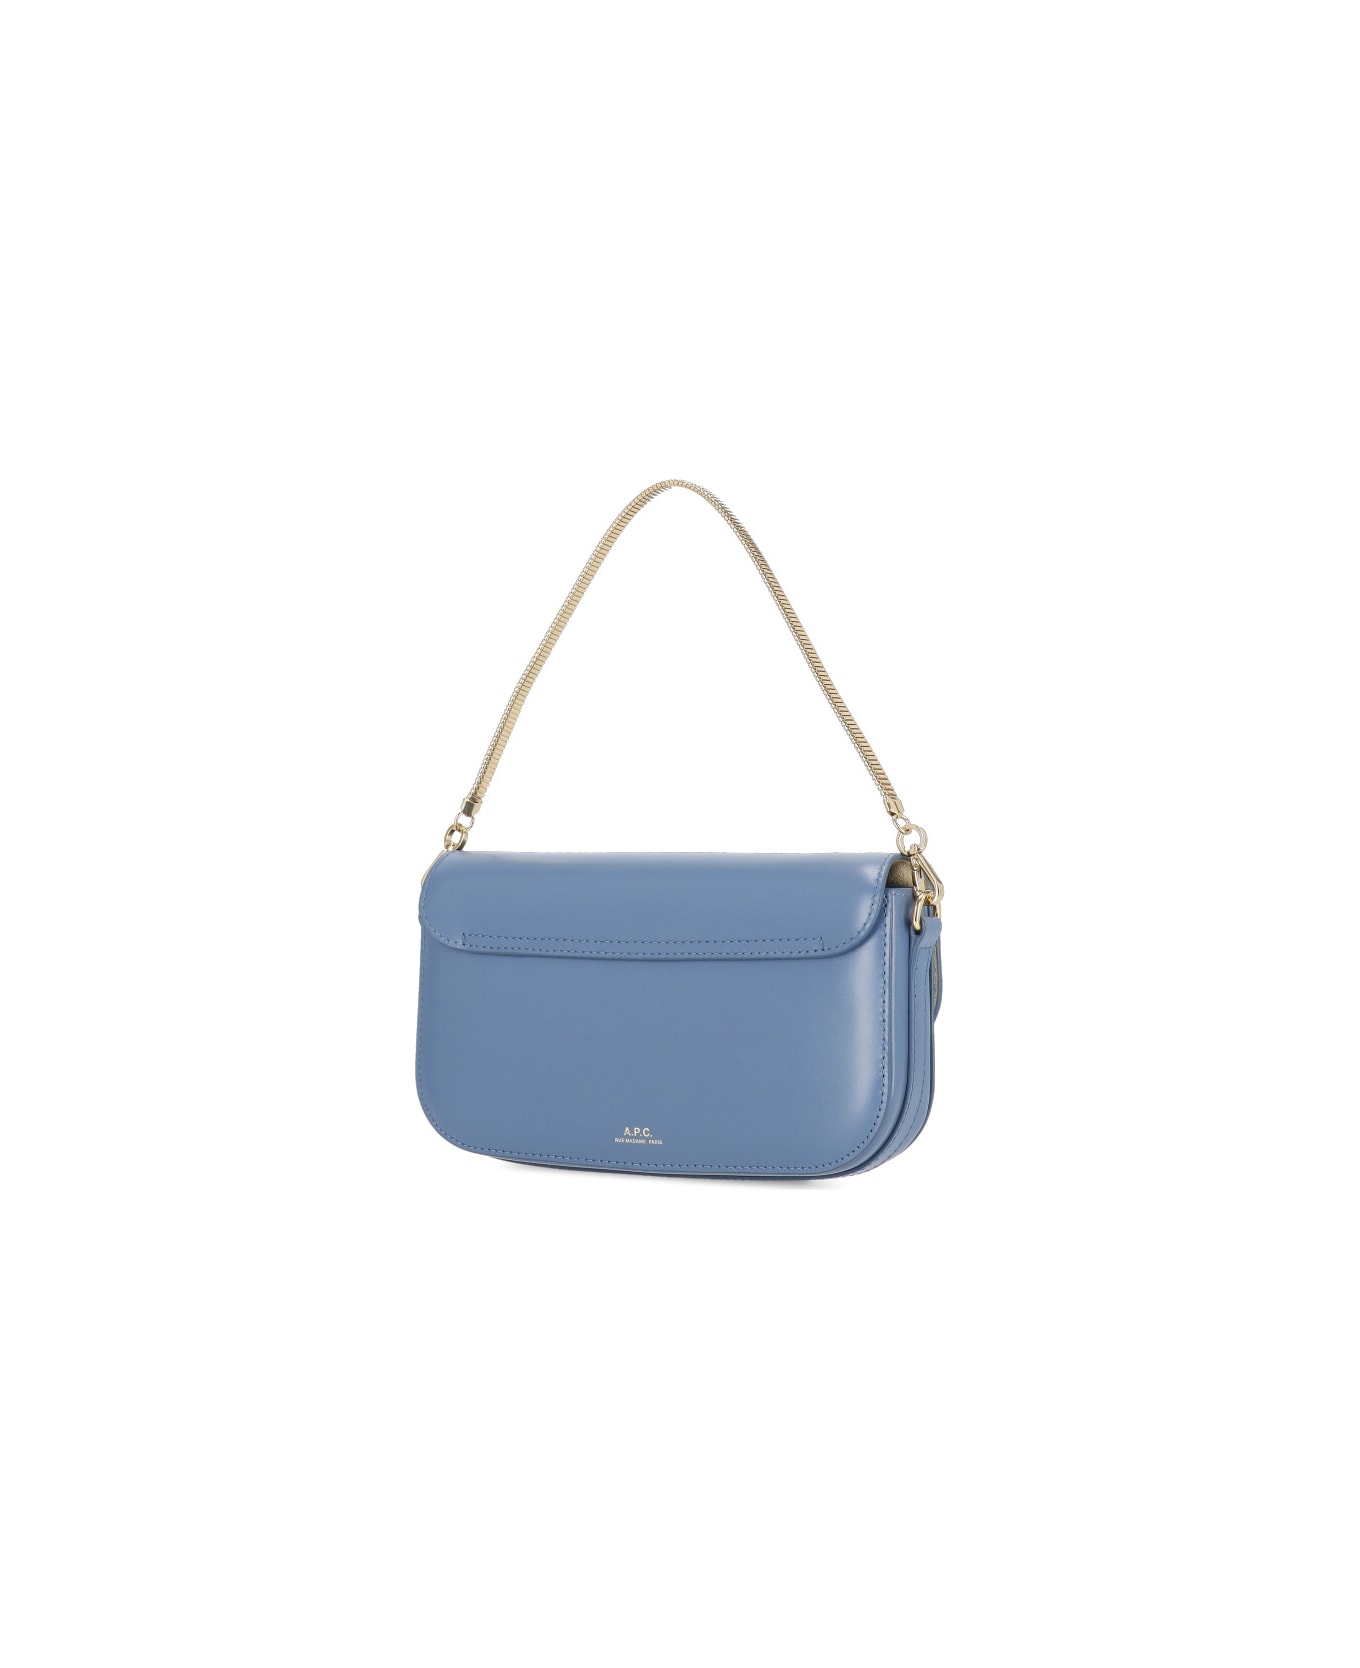 A.P.C. Grace Leather Clutch Bag - Light Blue